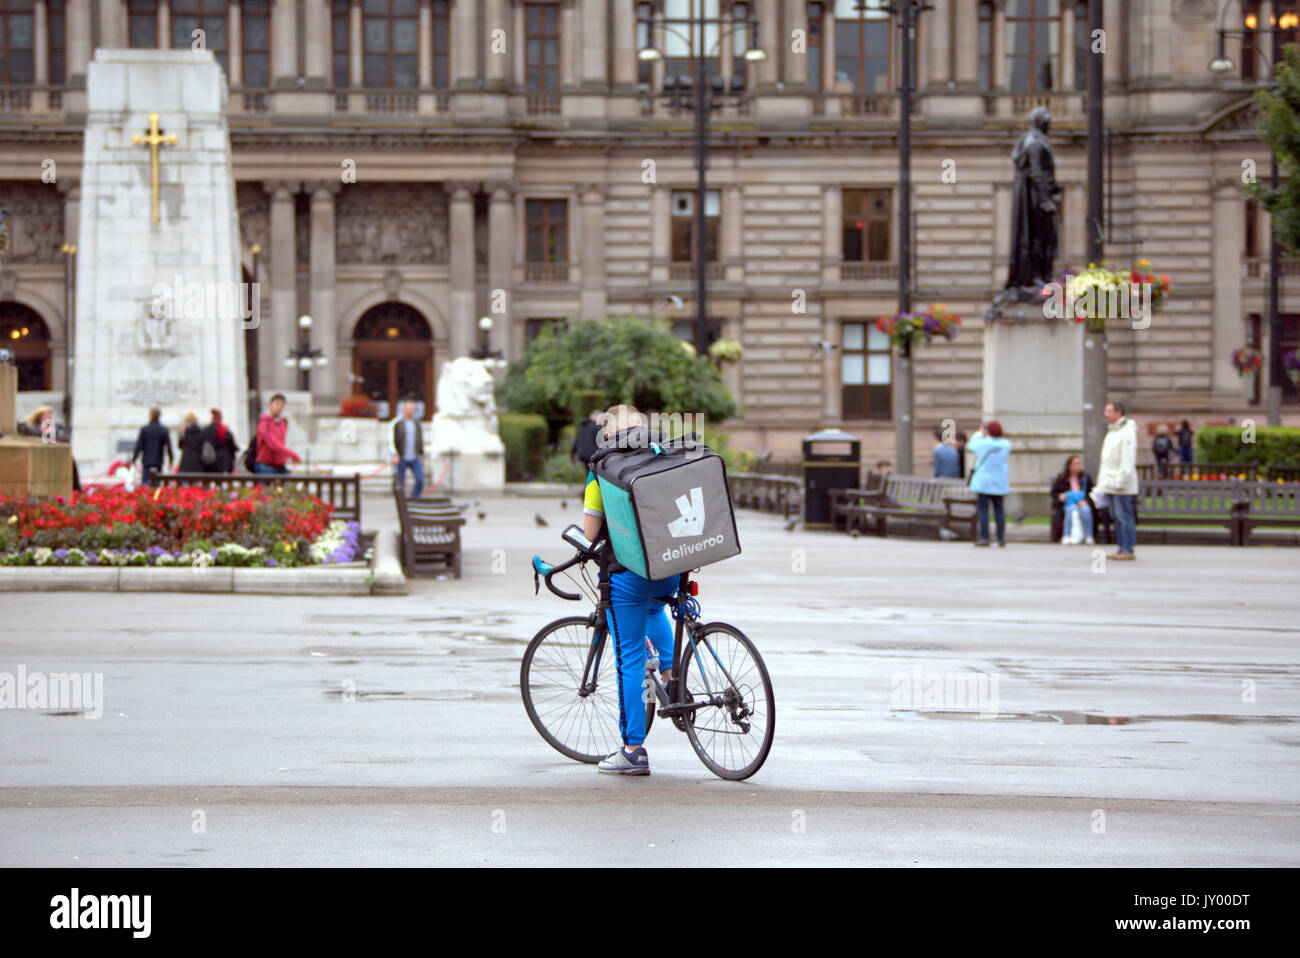 Nasse George Square Glasgow junge Mann junge Lieferung bike Radfahrer Deliveroo Lebensmittel-lieferservice texting warten auf Job, die draußen auf der Straße Straße Stockfoto